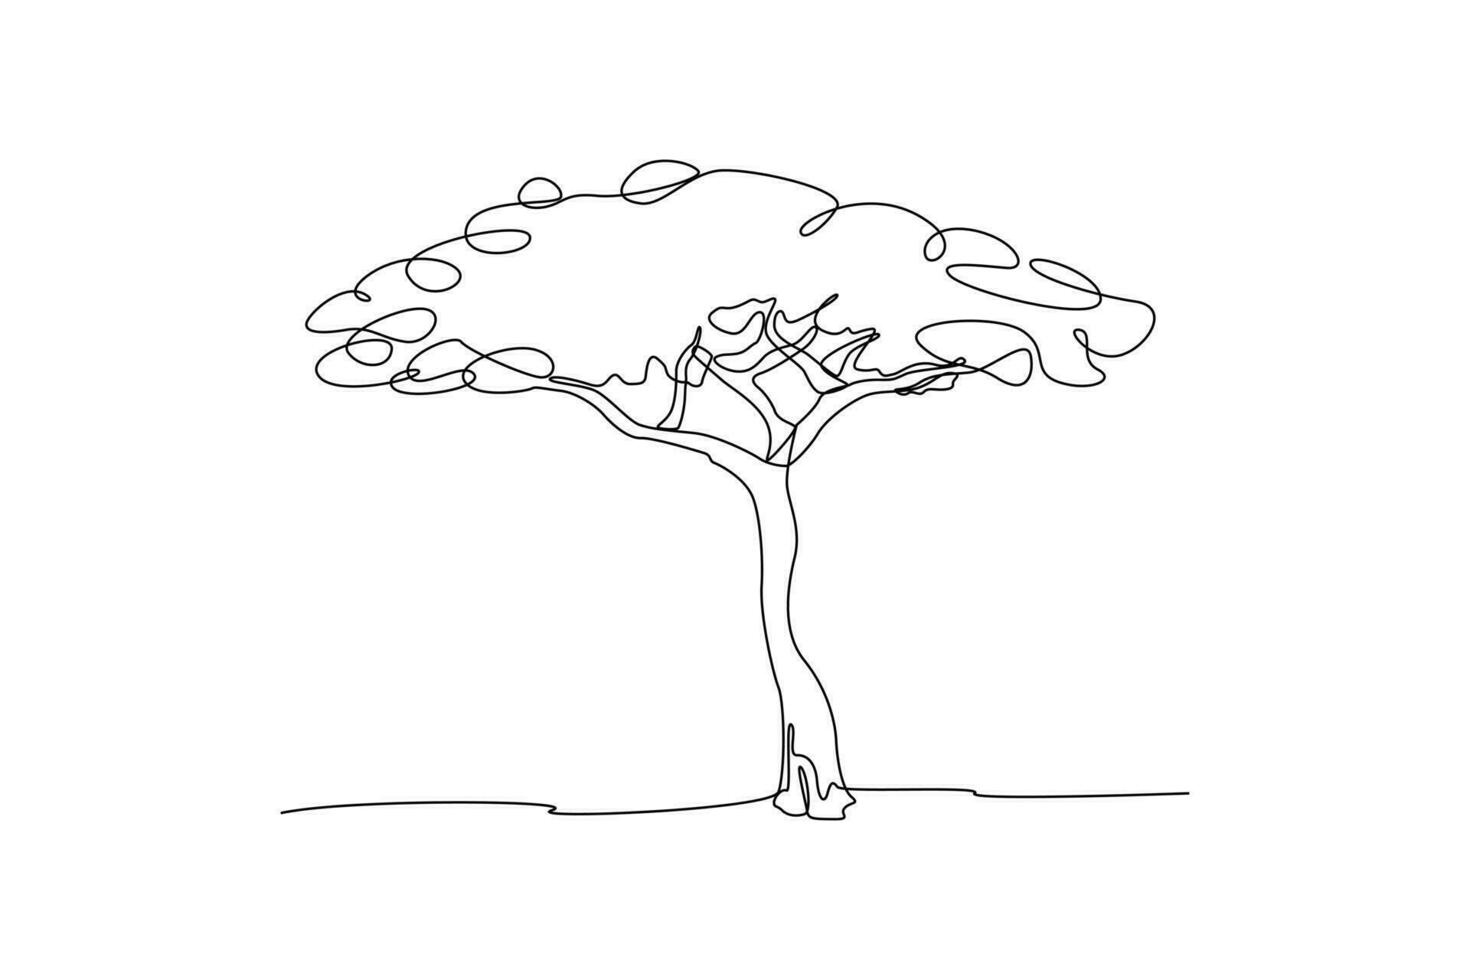 kontinuierlich eine Linie Zeichnung hoch belaubt Baum. Baum Konzept Single Linie Zeichnung Design Grafik Vektor Illustration